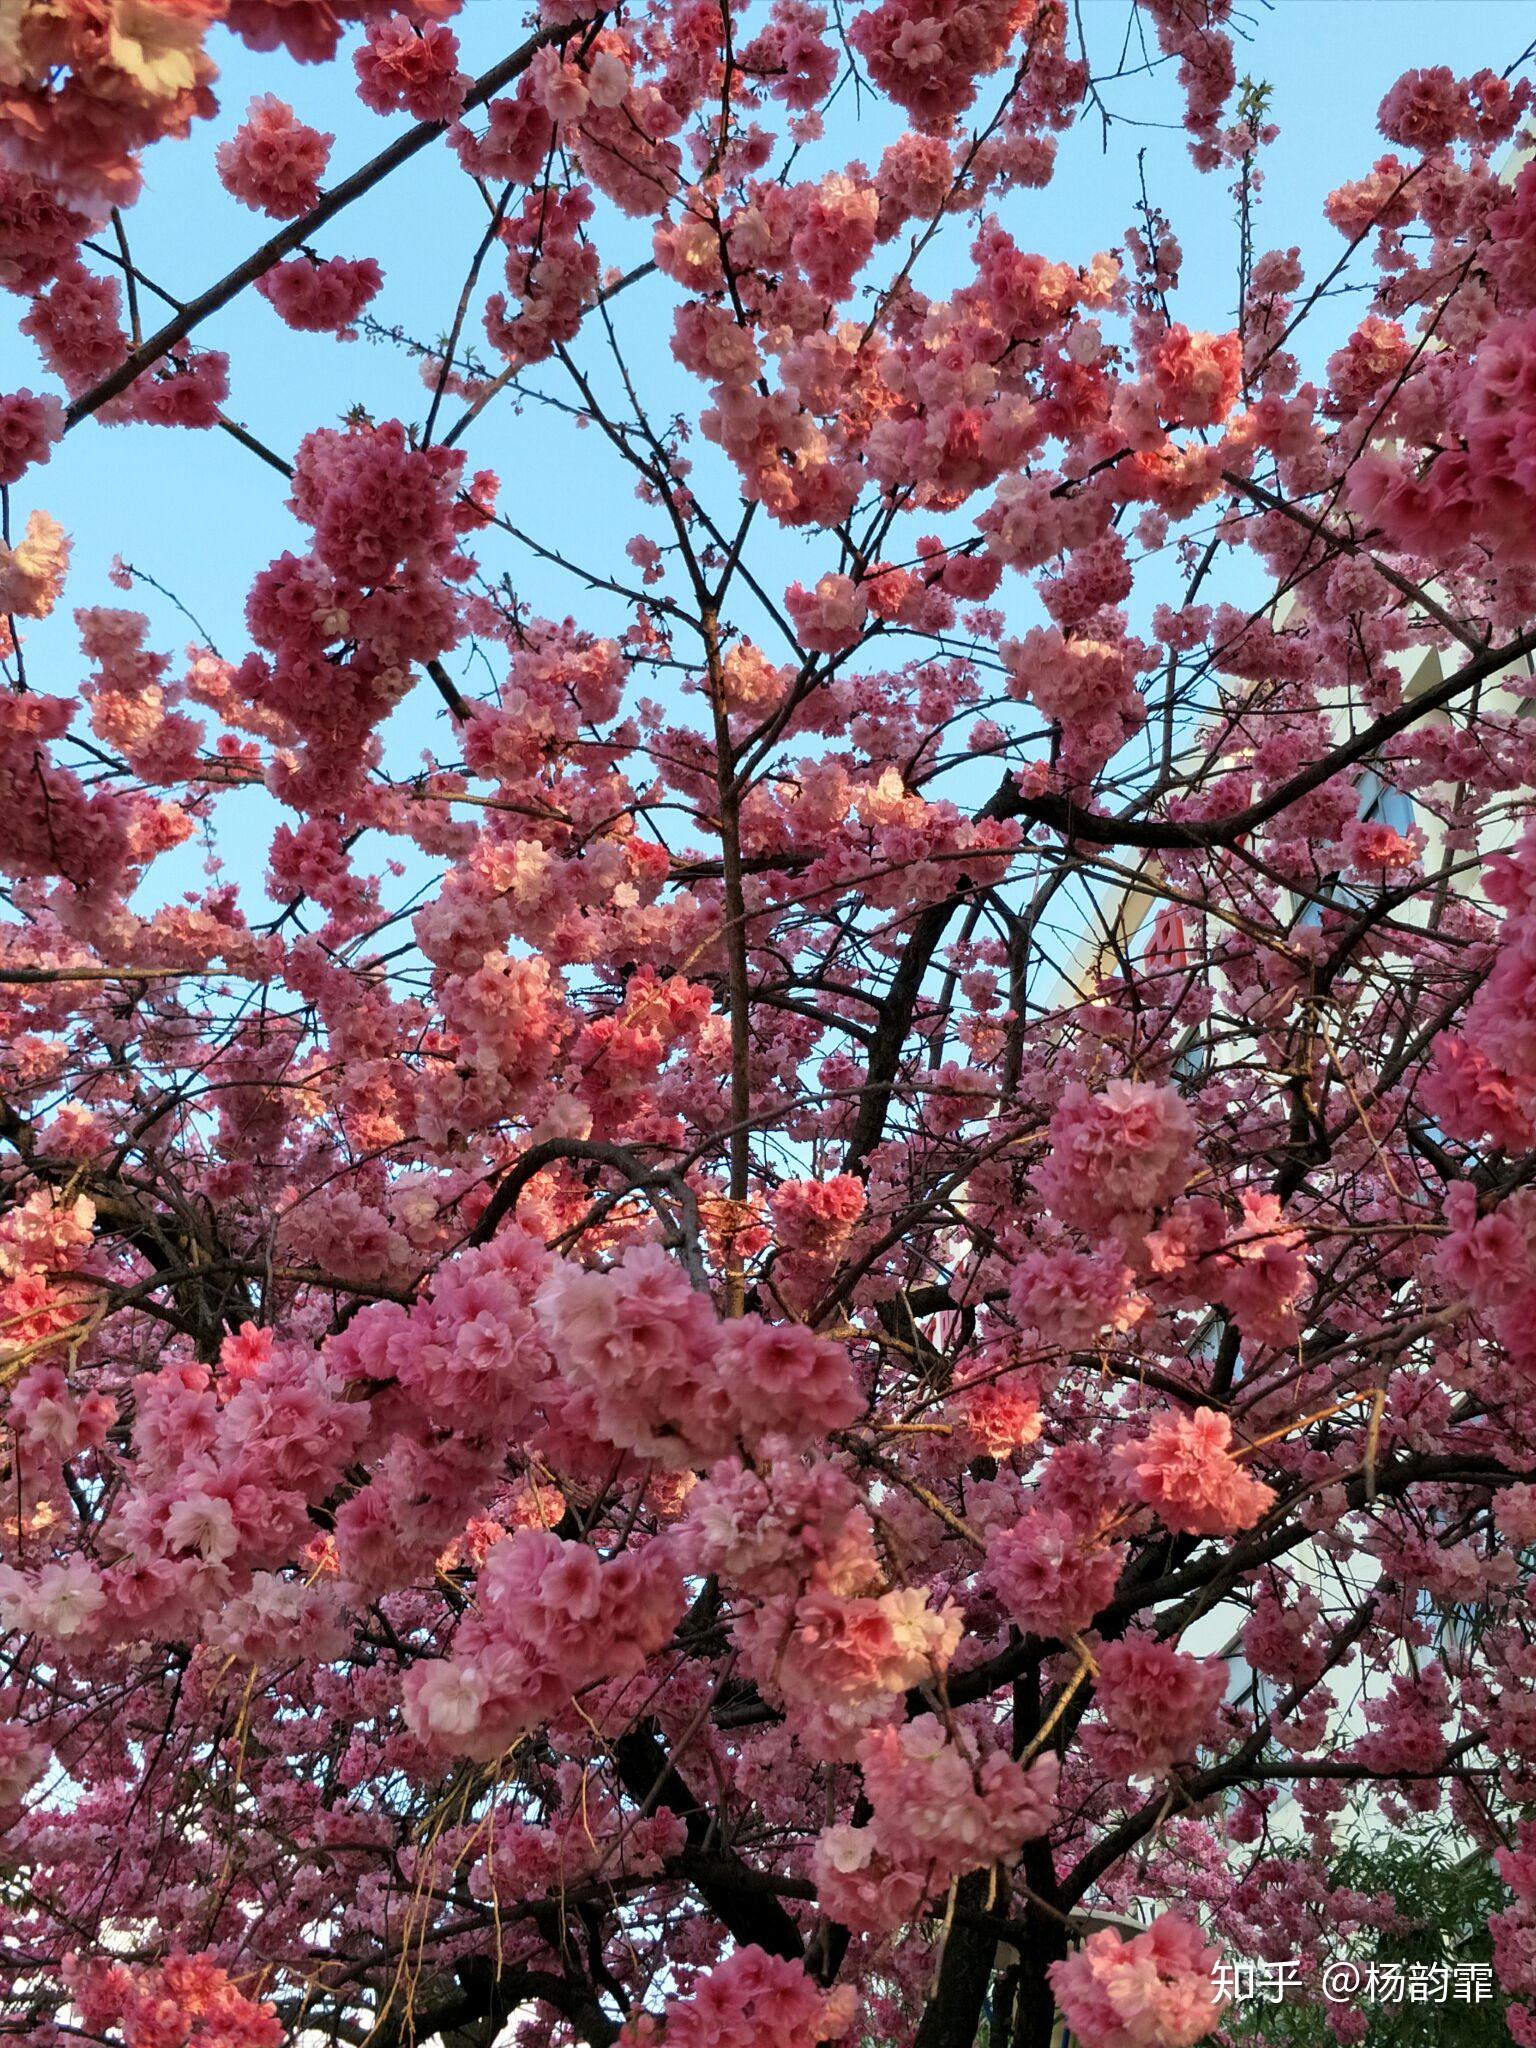 樱桃树的花和樱桃花形、花期差不多,都是一簇